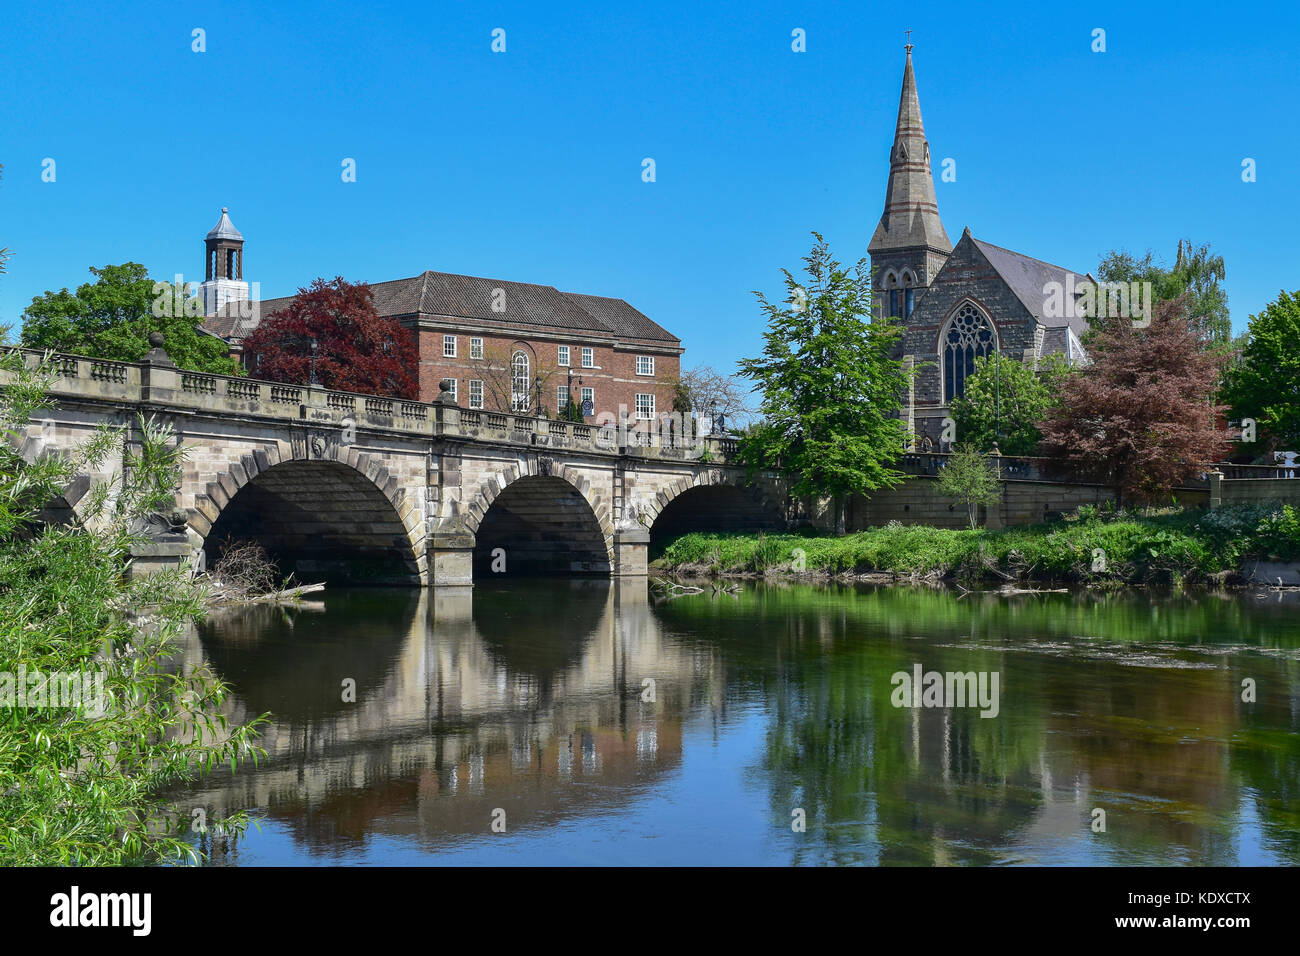 Les anglais Le pont sur la rivière Severn, Shrewsbury, Shropshire, England, UK. united Reformed Church sur la droite et le centre de Sixth Form College Banque D'Images